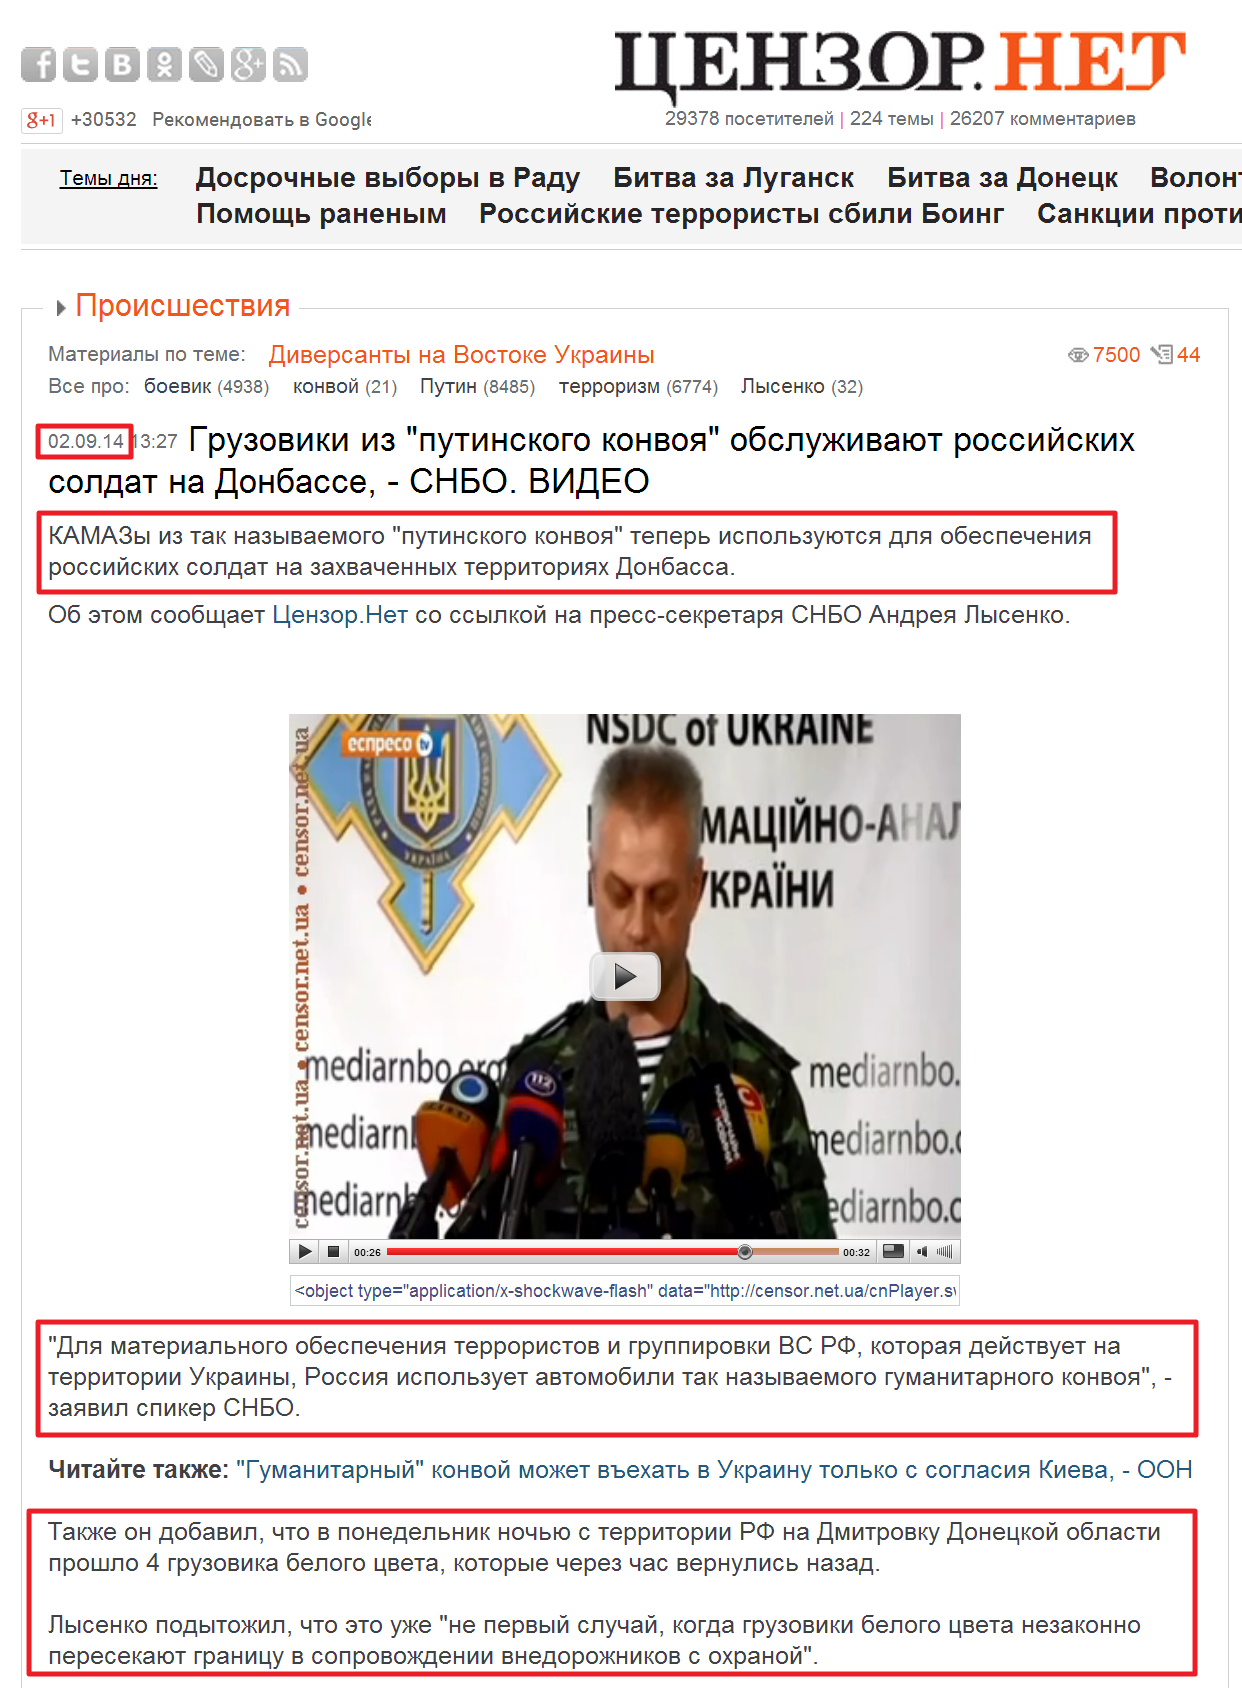 http://censor.net.ua/video_news/300762/gruzoviki_iz_putinskogo_konvoya_obslujivayut_rossiyiskih_soldat_na_donbasse_snbo_video